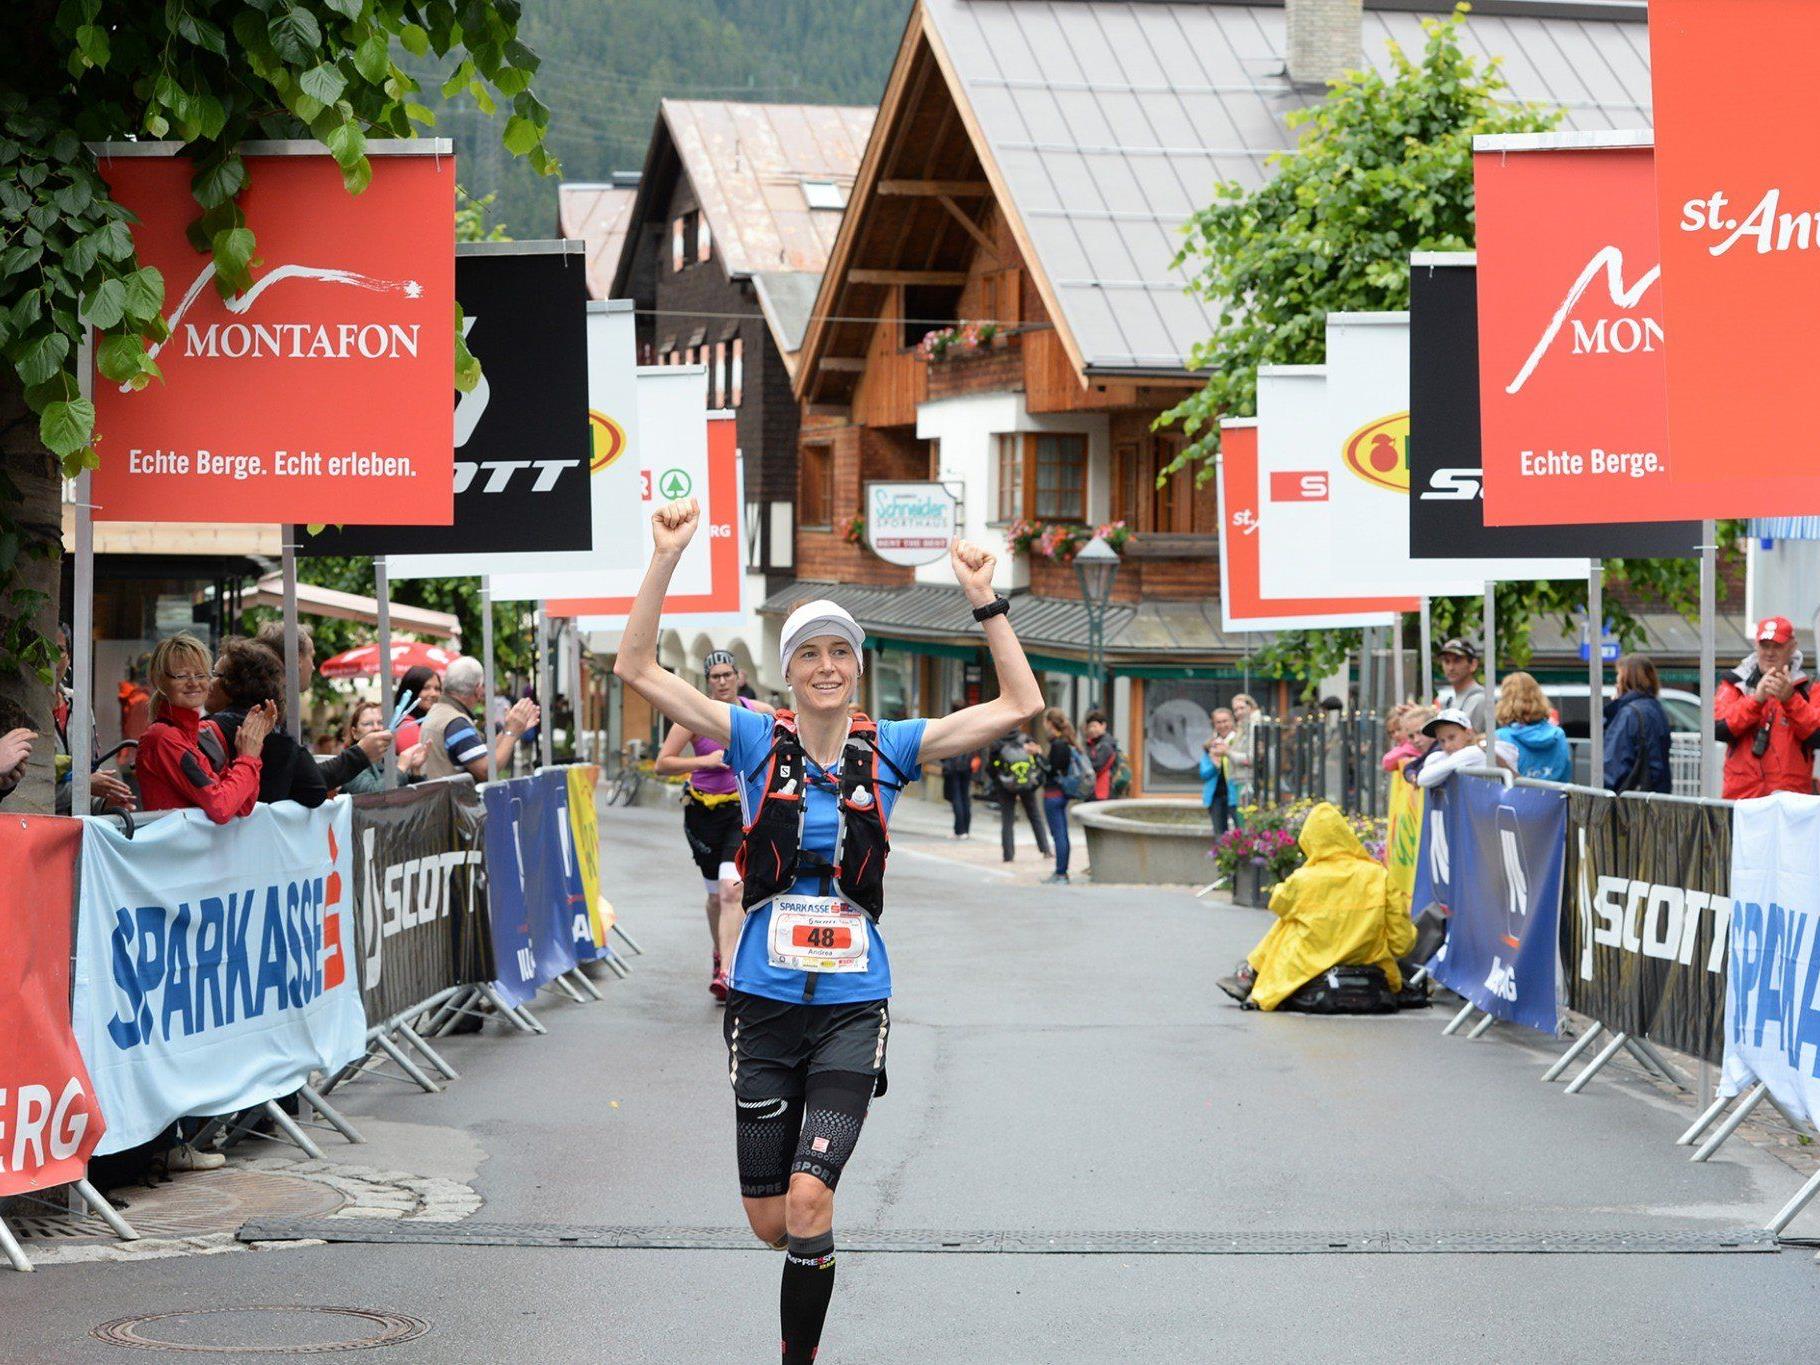 Die Vorarlbergerin Andrea Feuerstein-Rauch siegte beim Montafon Arlberg Marathon 2014 powered by Sparkasse in einer Zeit von 4:14:59,6.